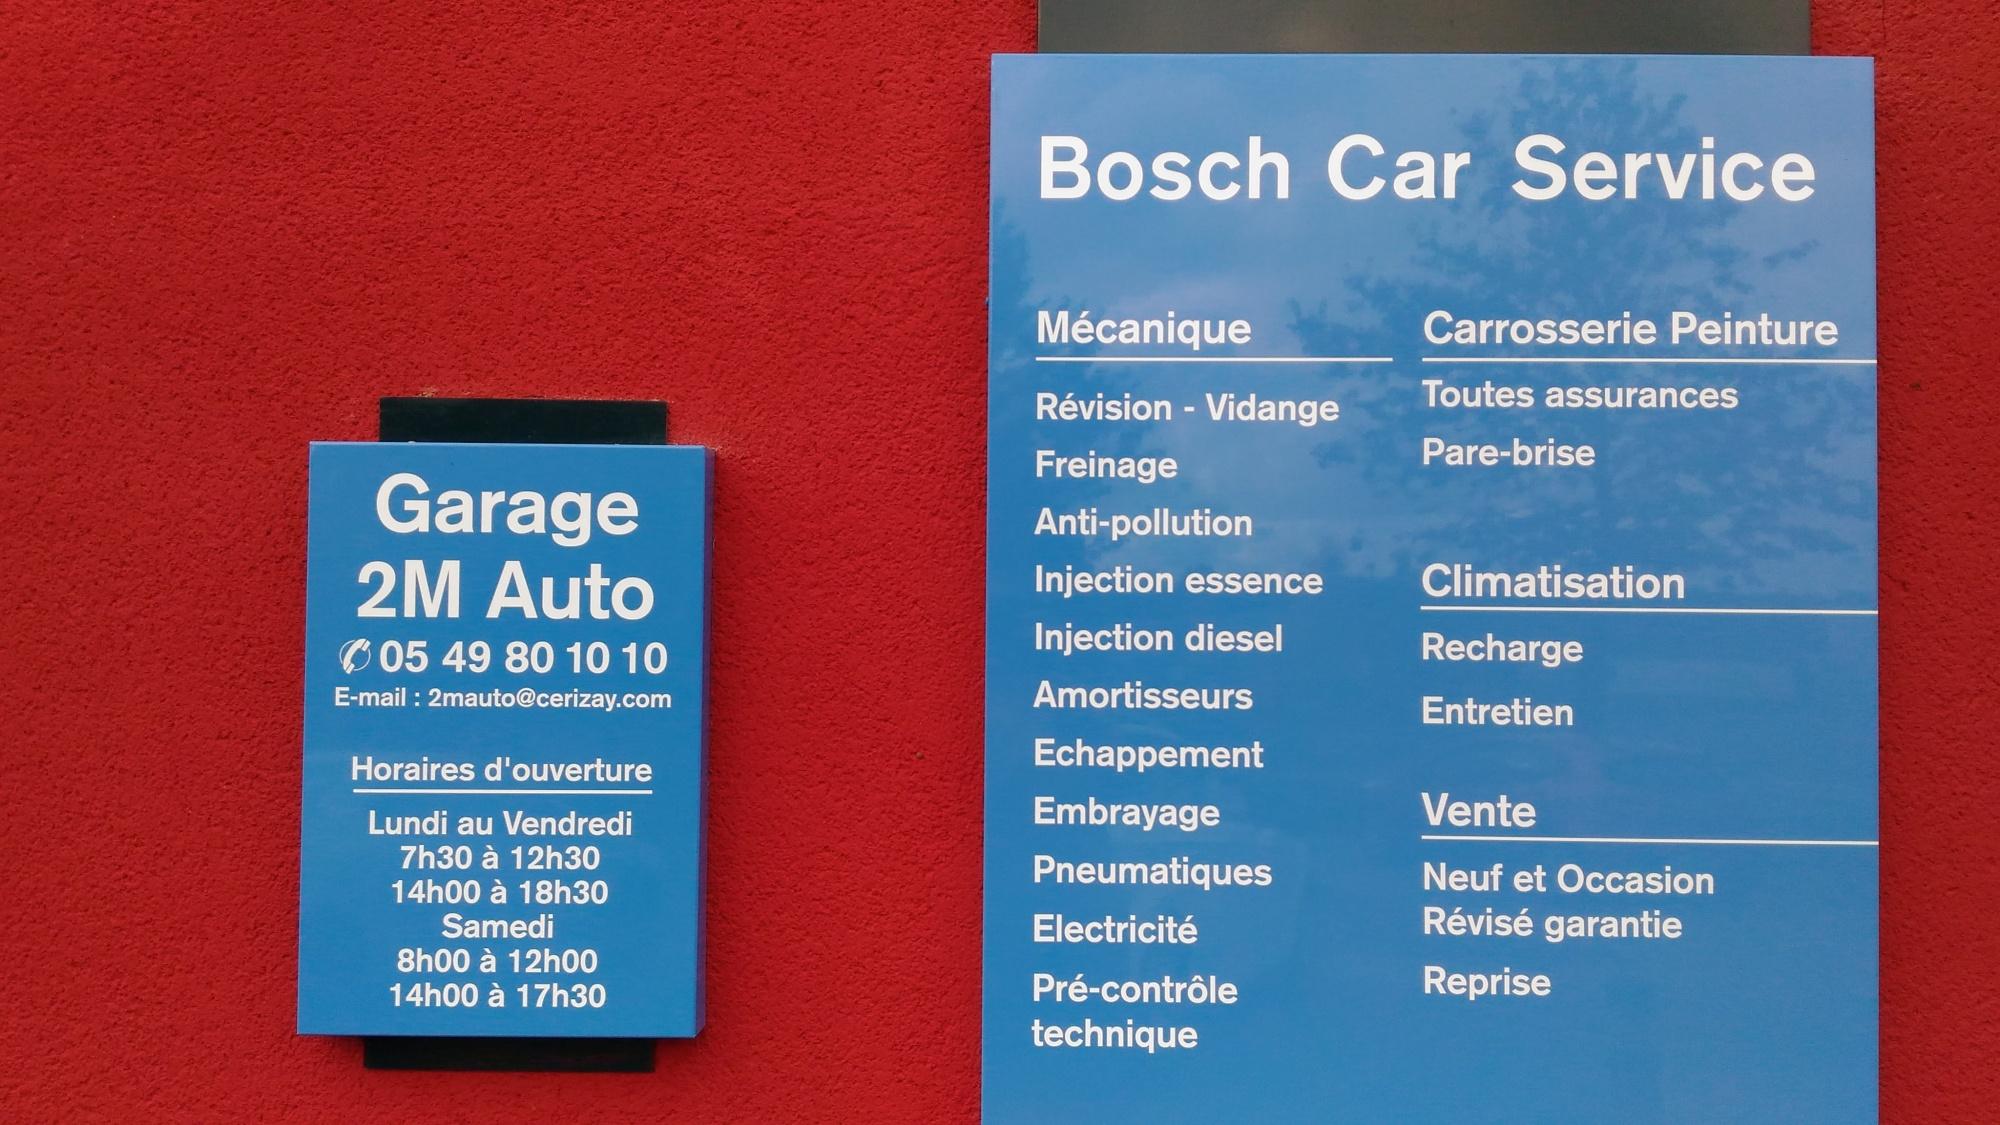 2m Auto - Bosch Car Service Cerizay